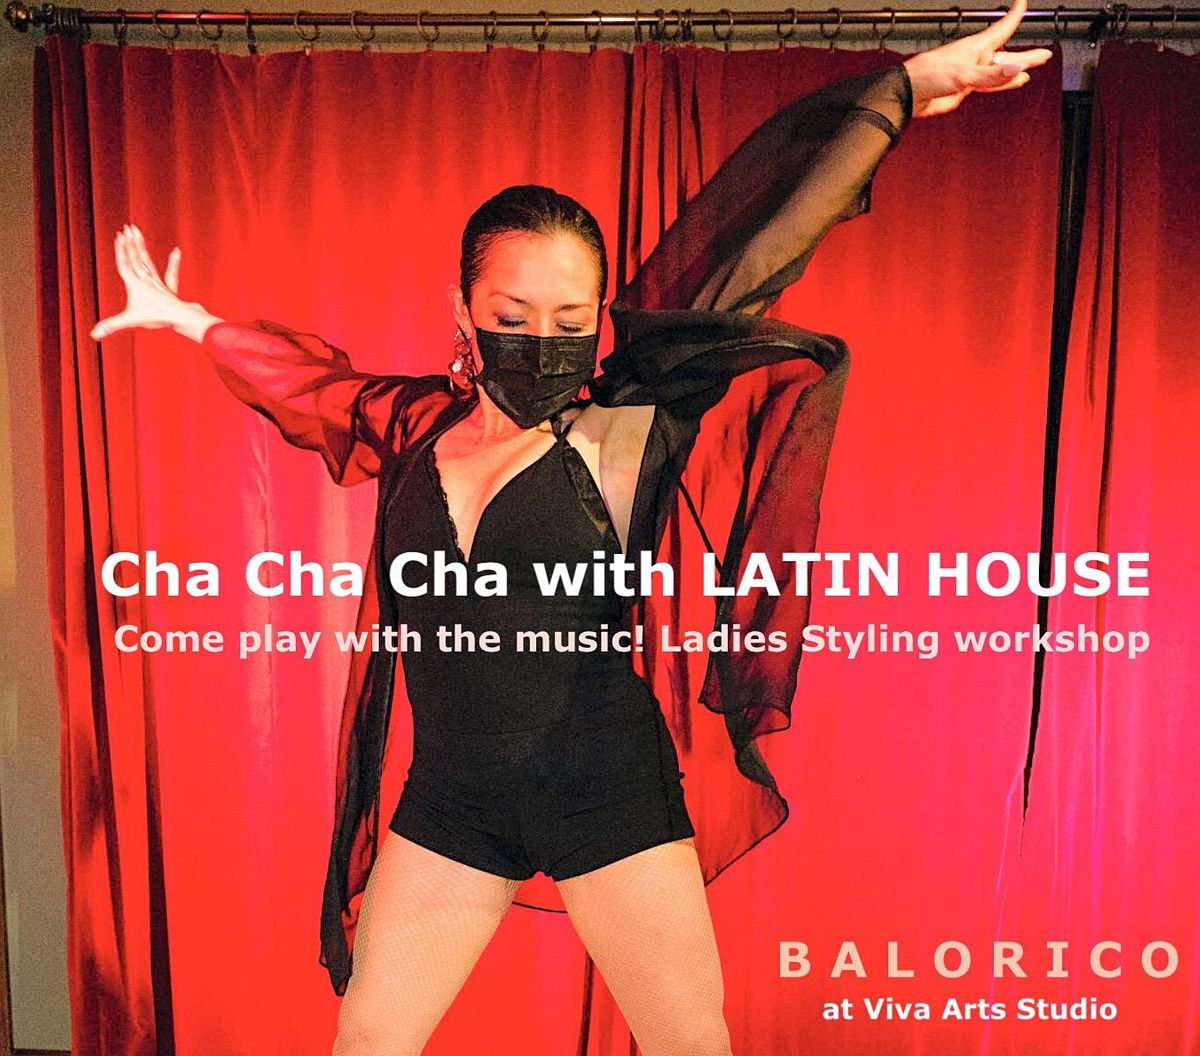 Cha Cha Cha with LATIN HOUSE workshop